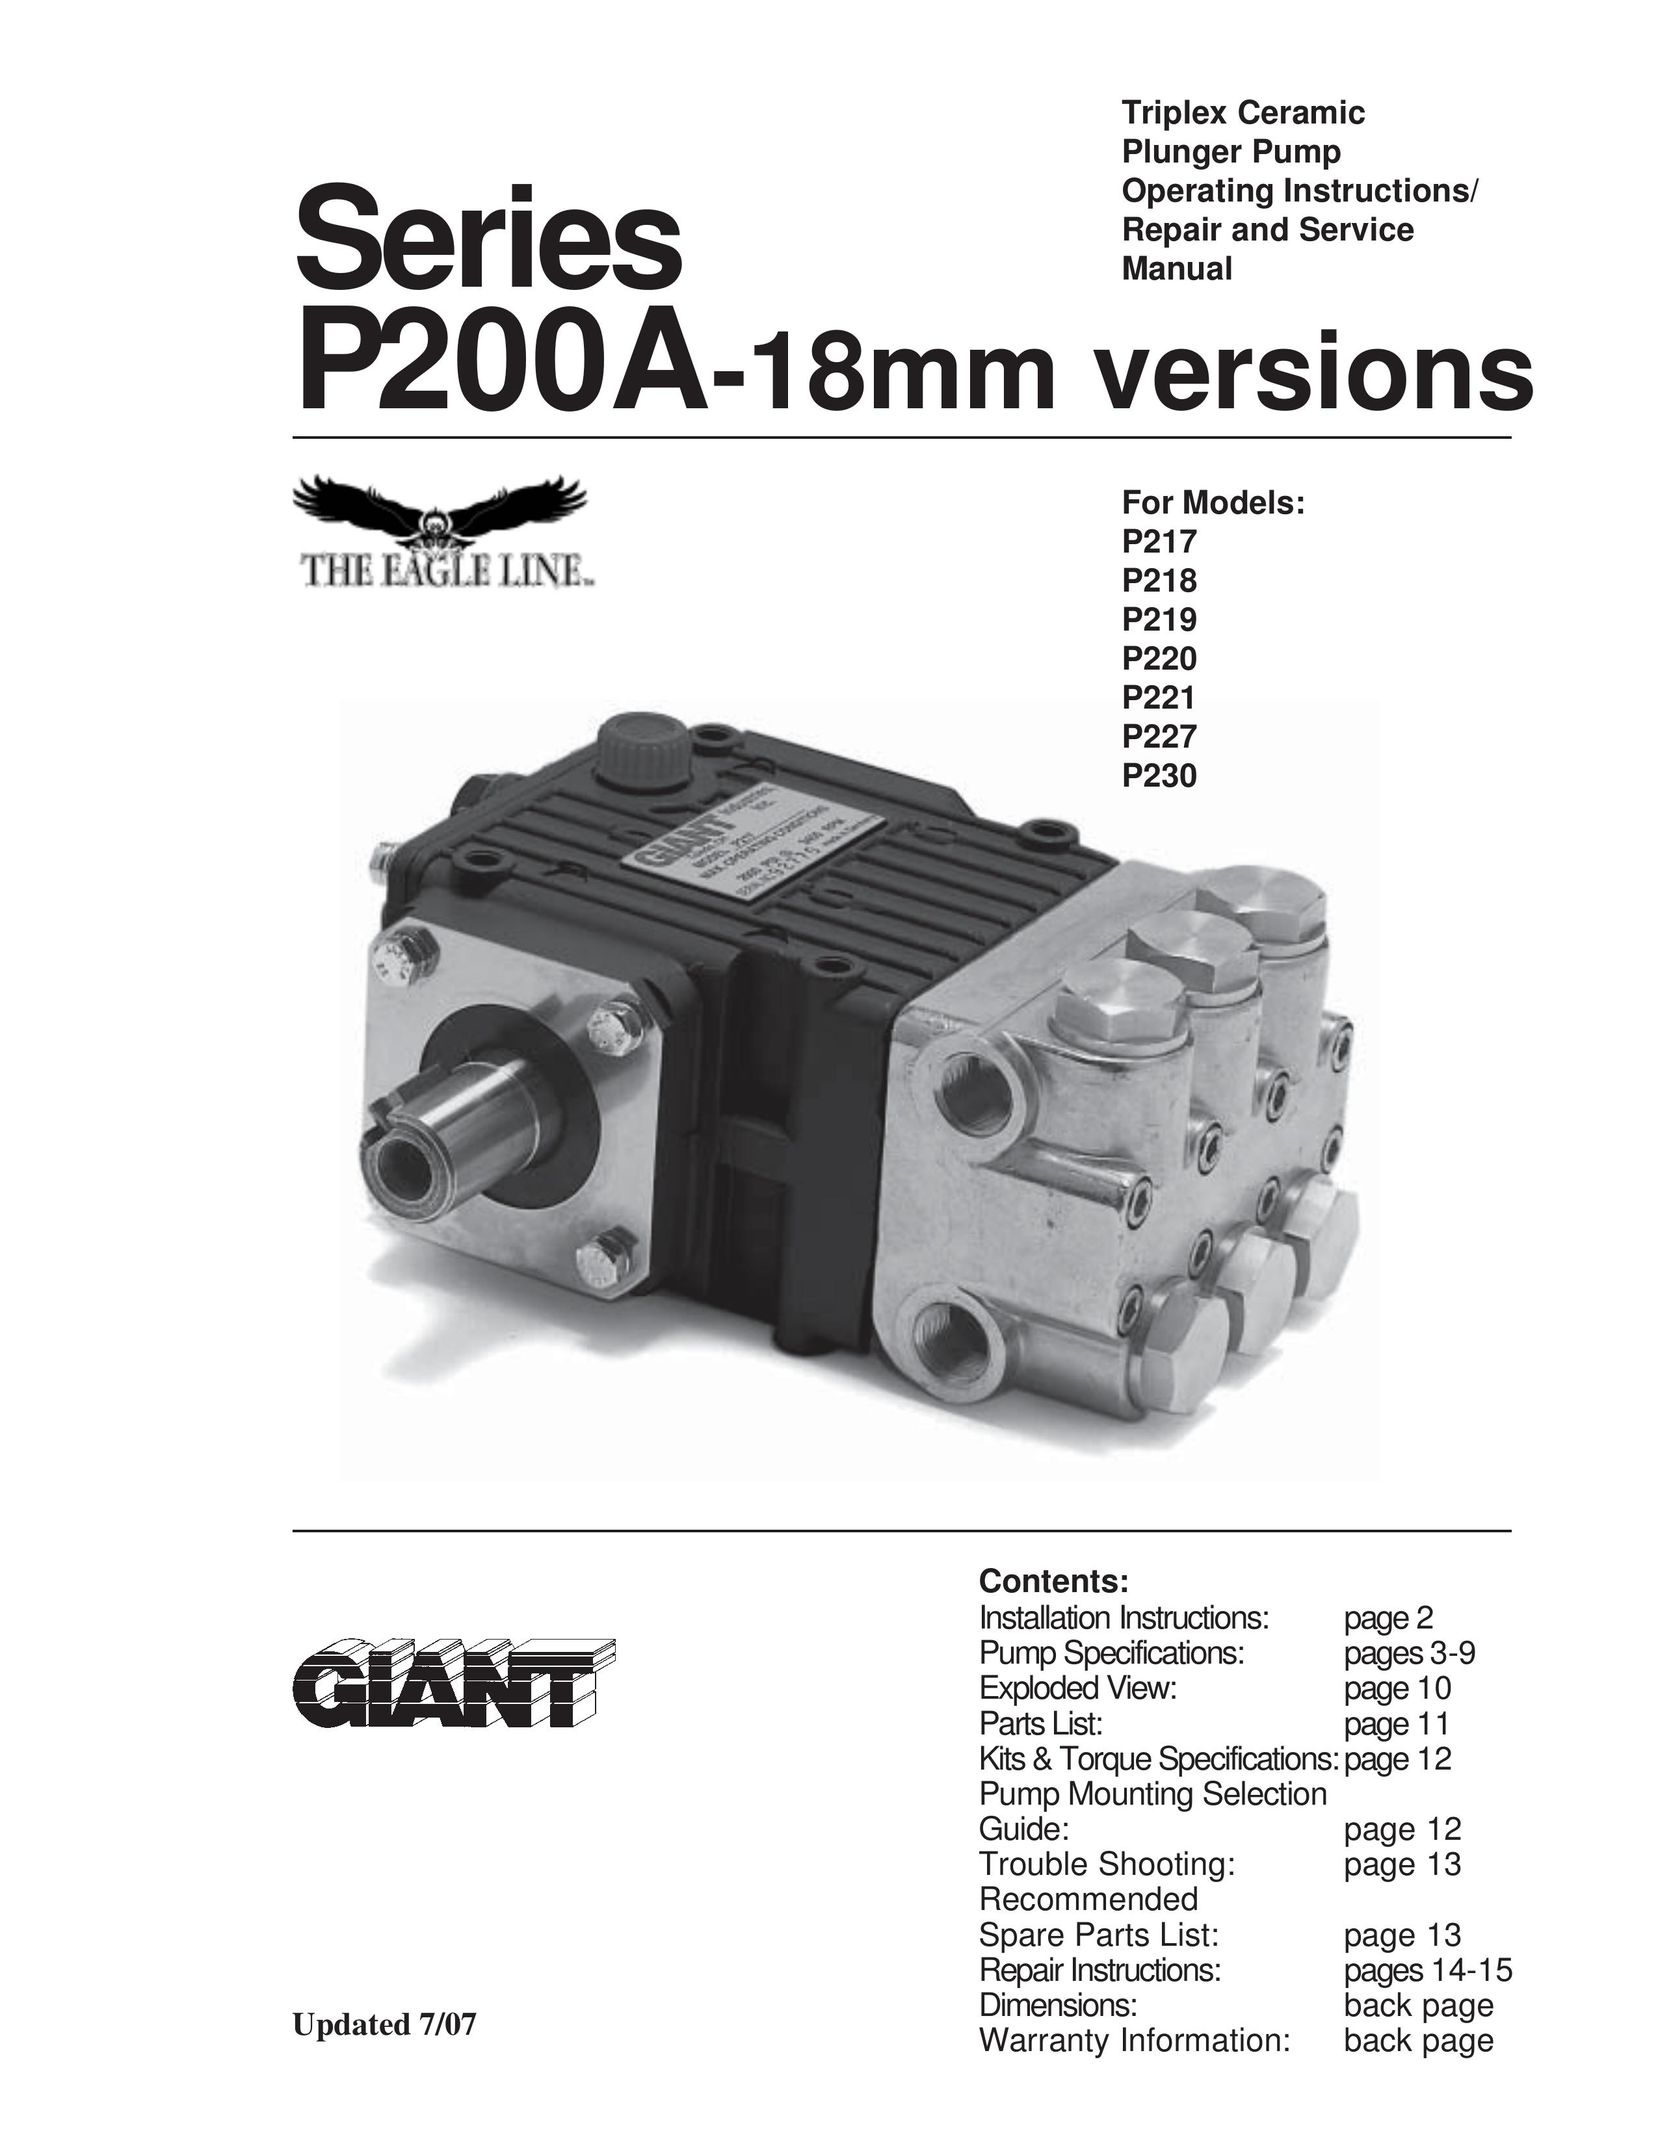 Giant P219 Water Pump User Manual